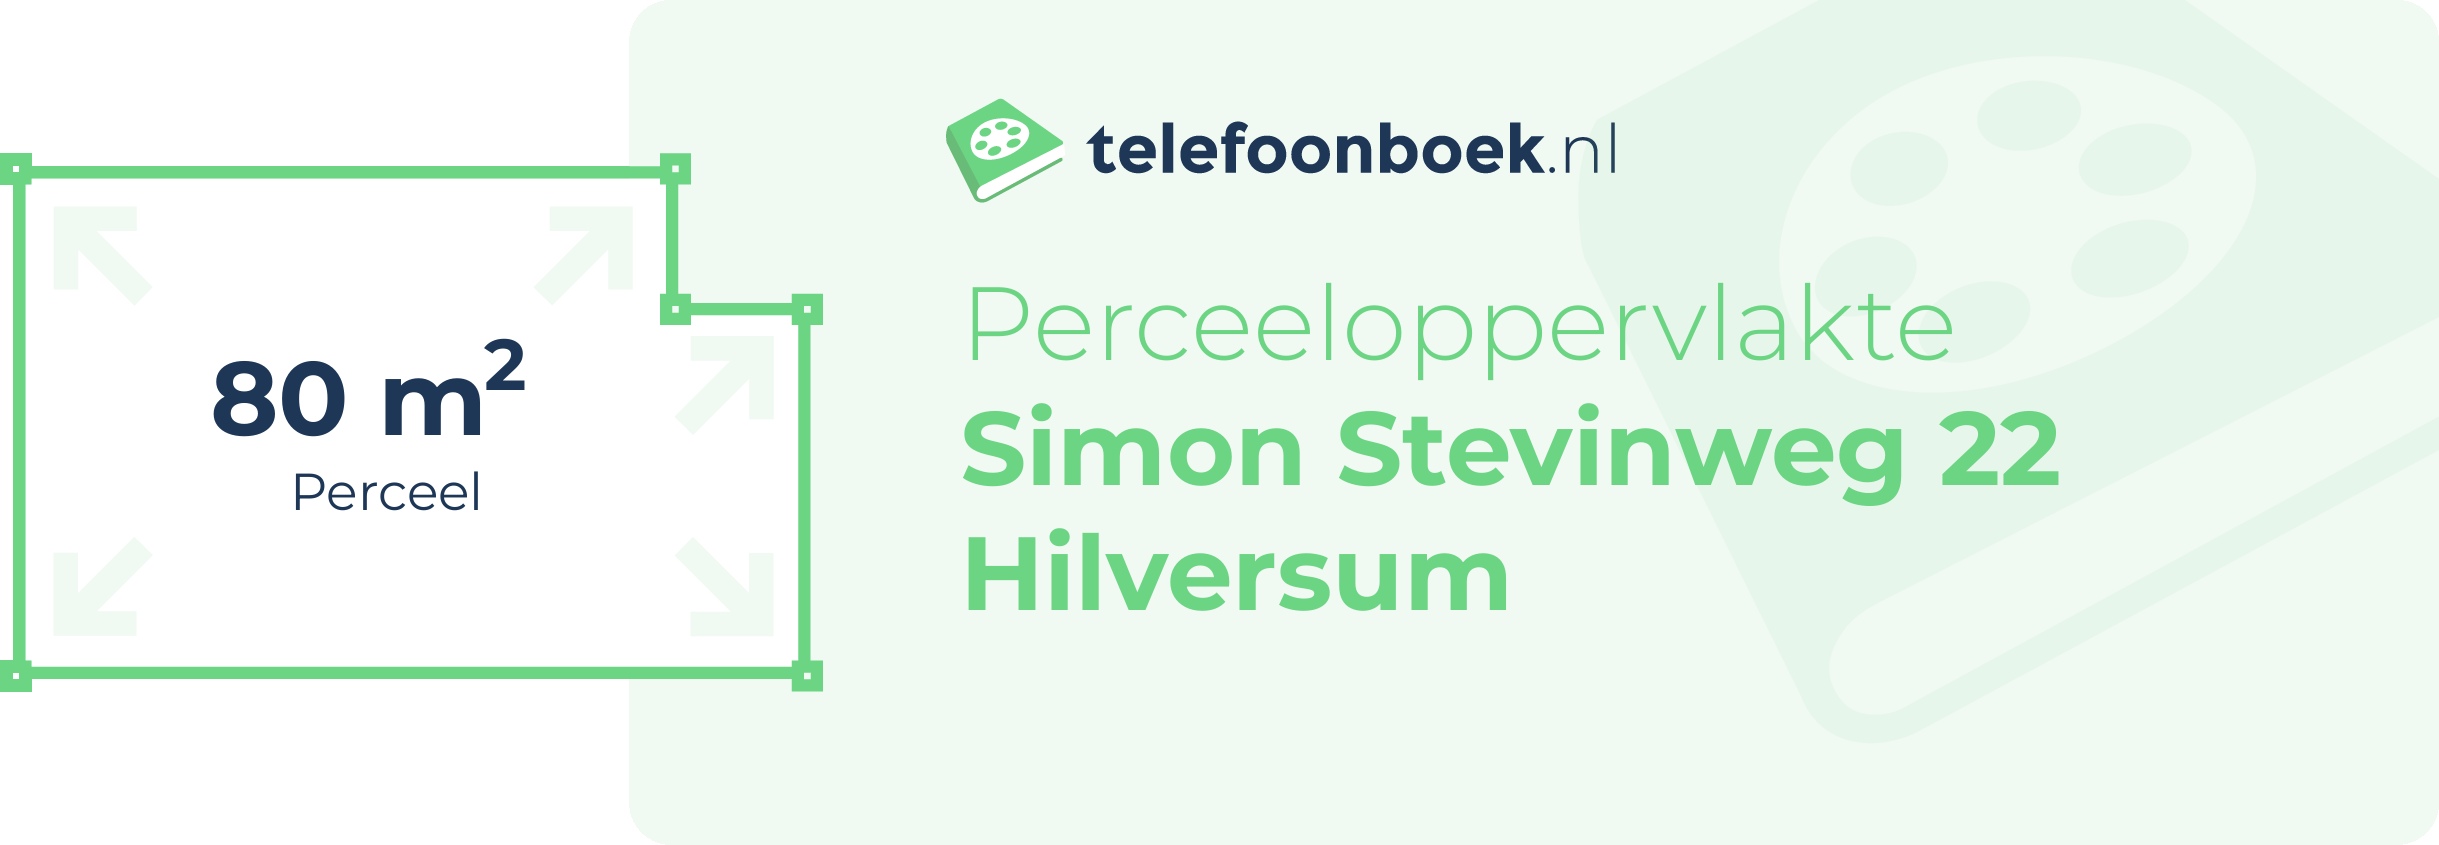 Perceeloppervlakte Simon Stevinweg 22 Hilversum